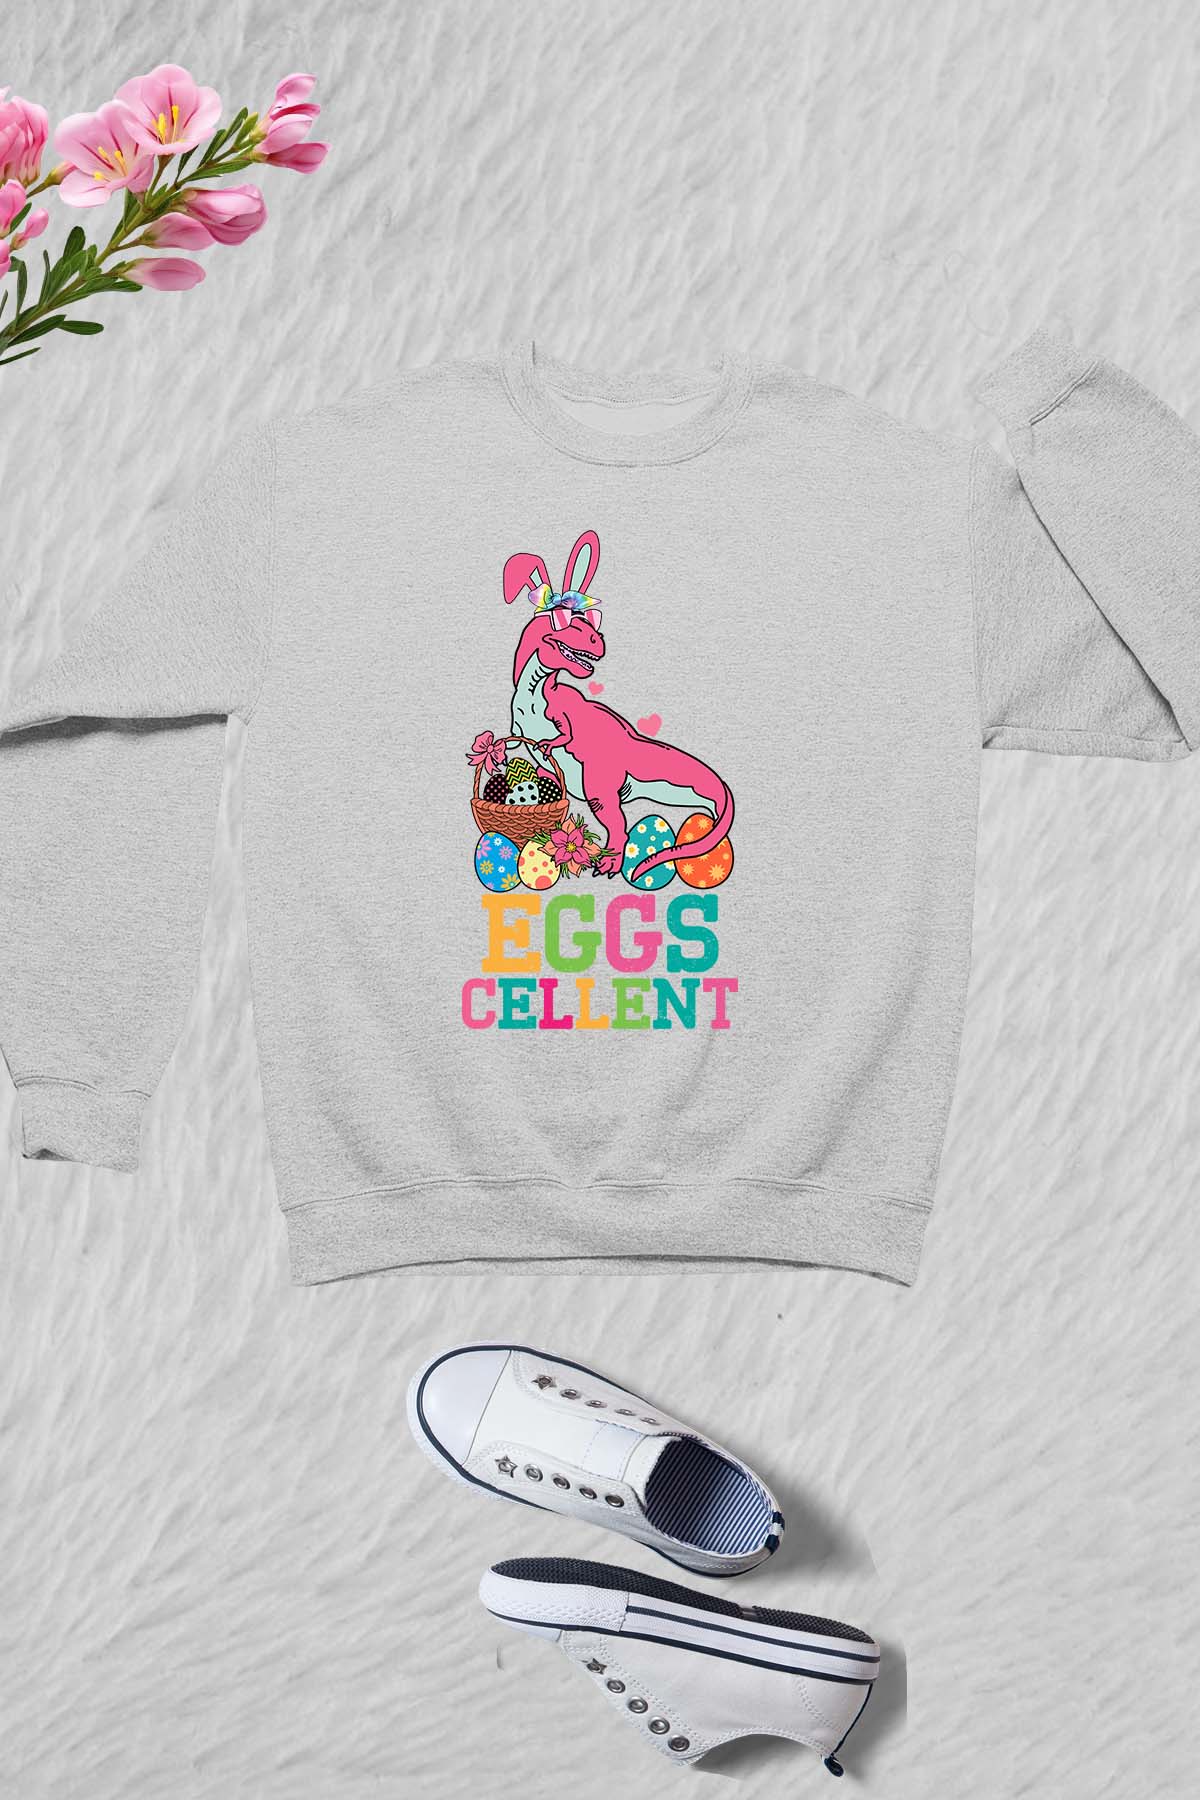 Egg Celent Kids Funny Easter Sweatshirt